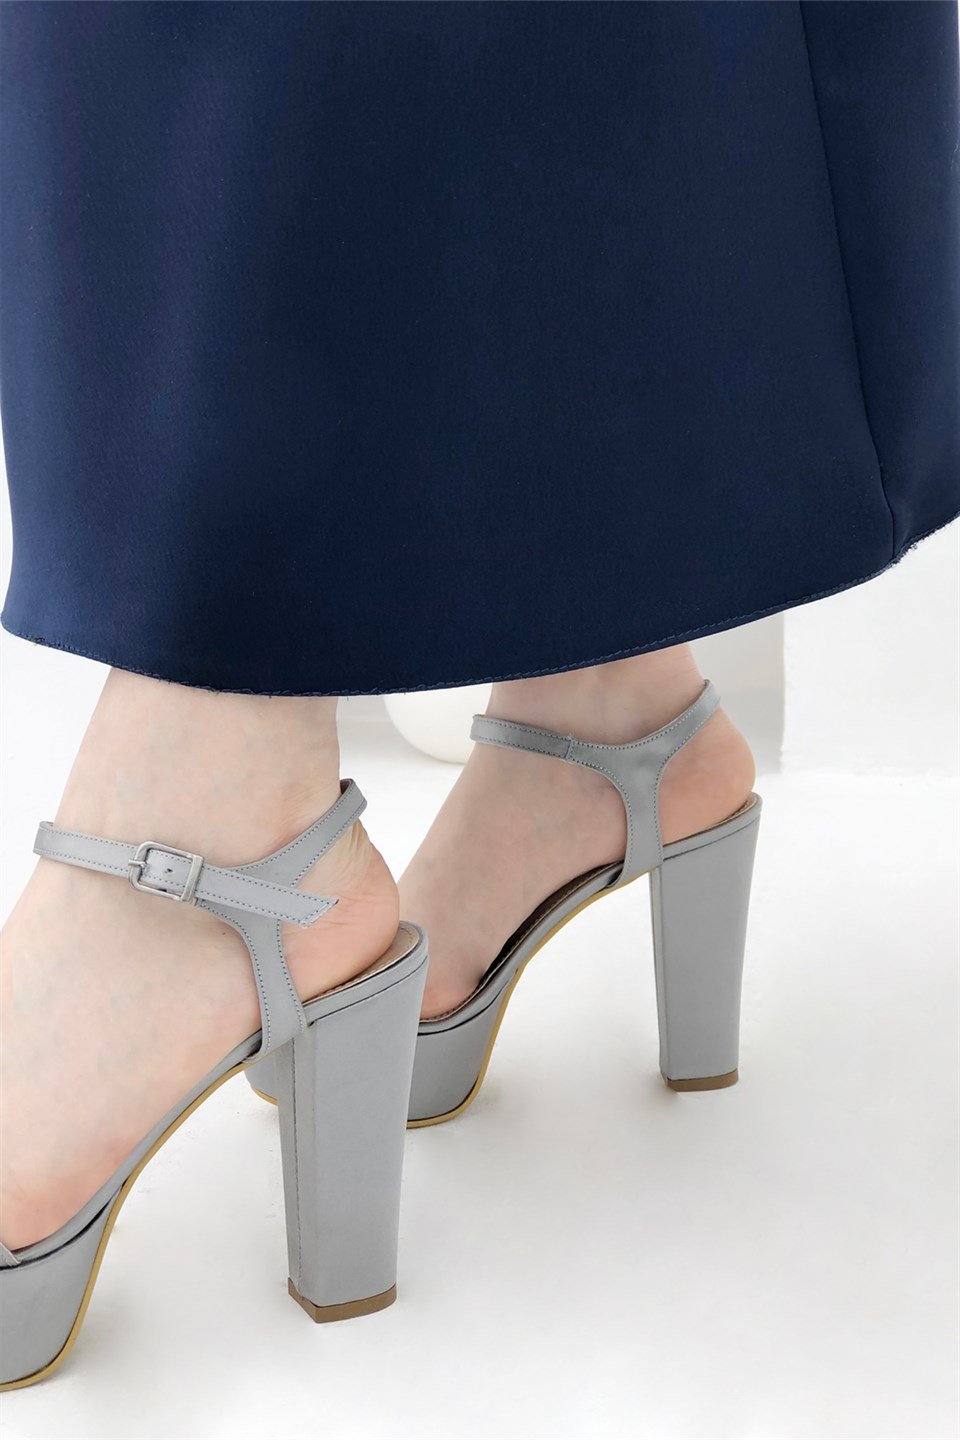 Yüksek Ve Kalın Topuklu Önü Açık Kadın Platform Abiye Ayakkabı Gümüş Saten  K-520 Carla Bella | Mybella Shoes